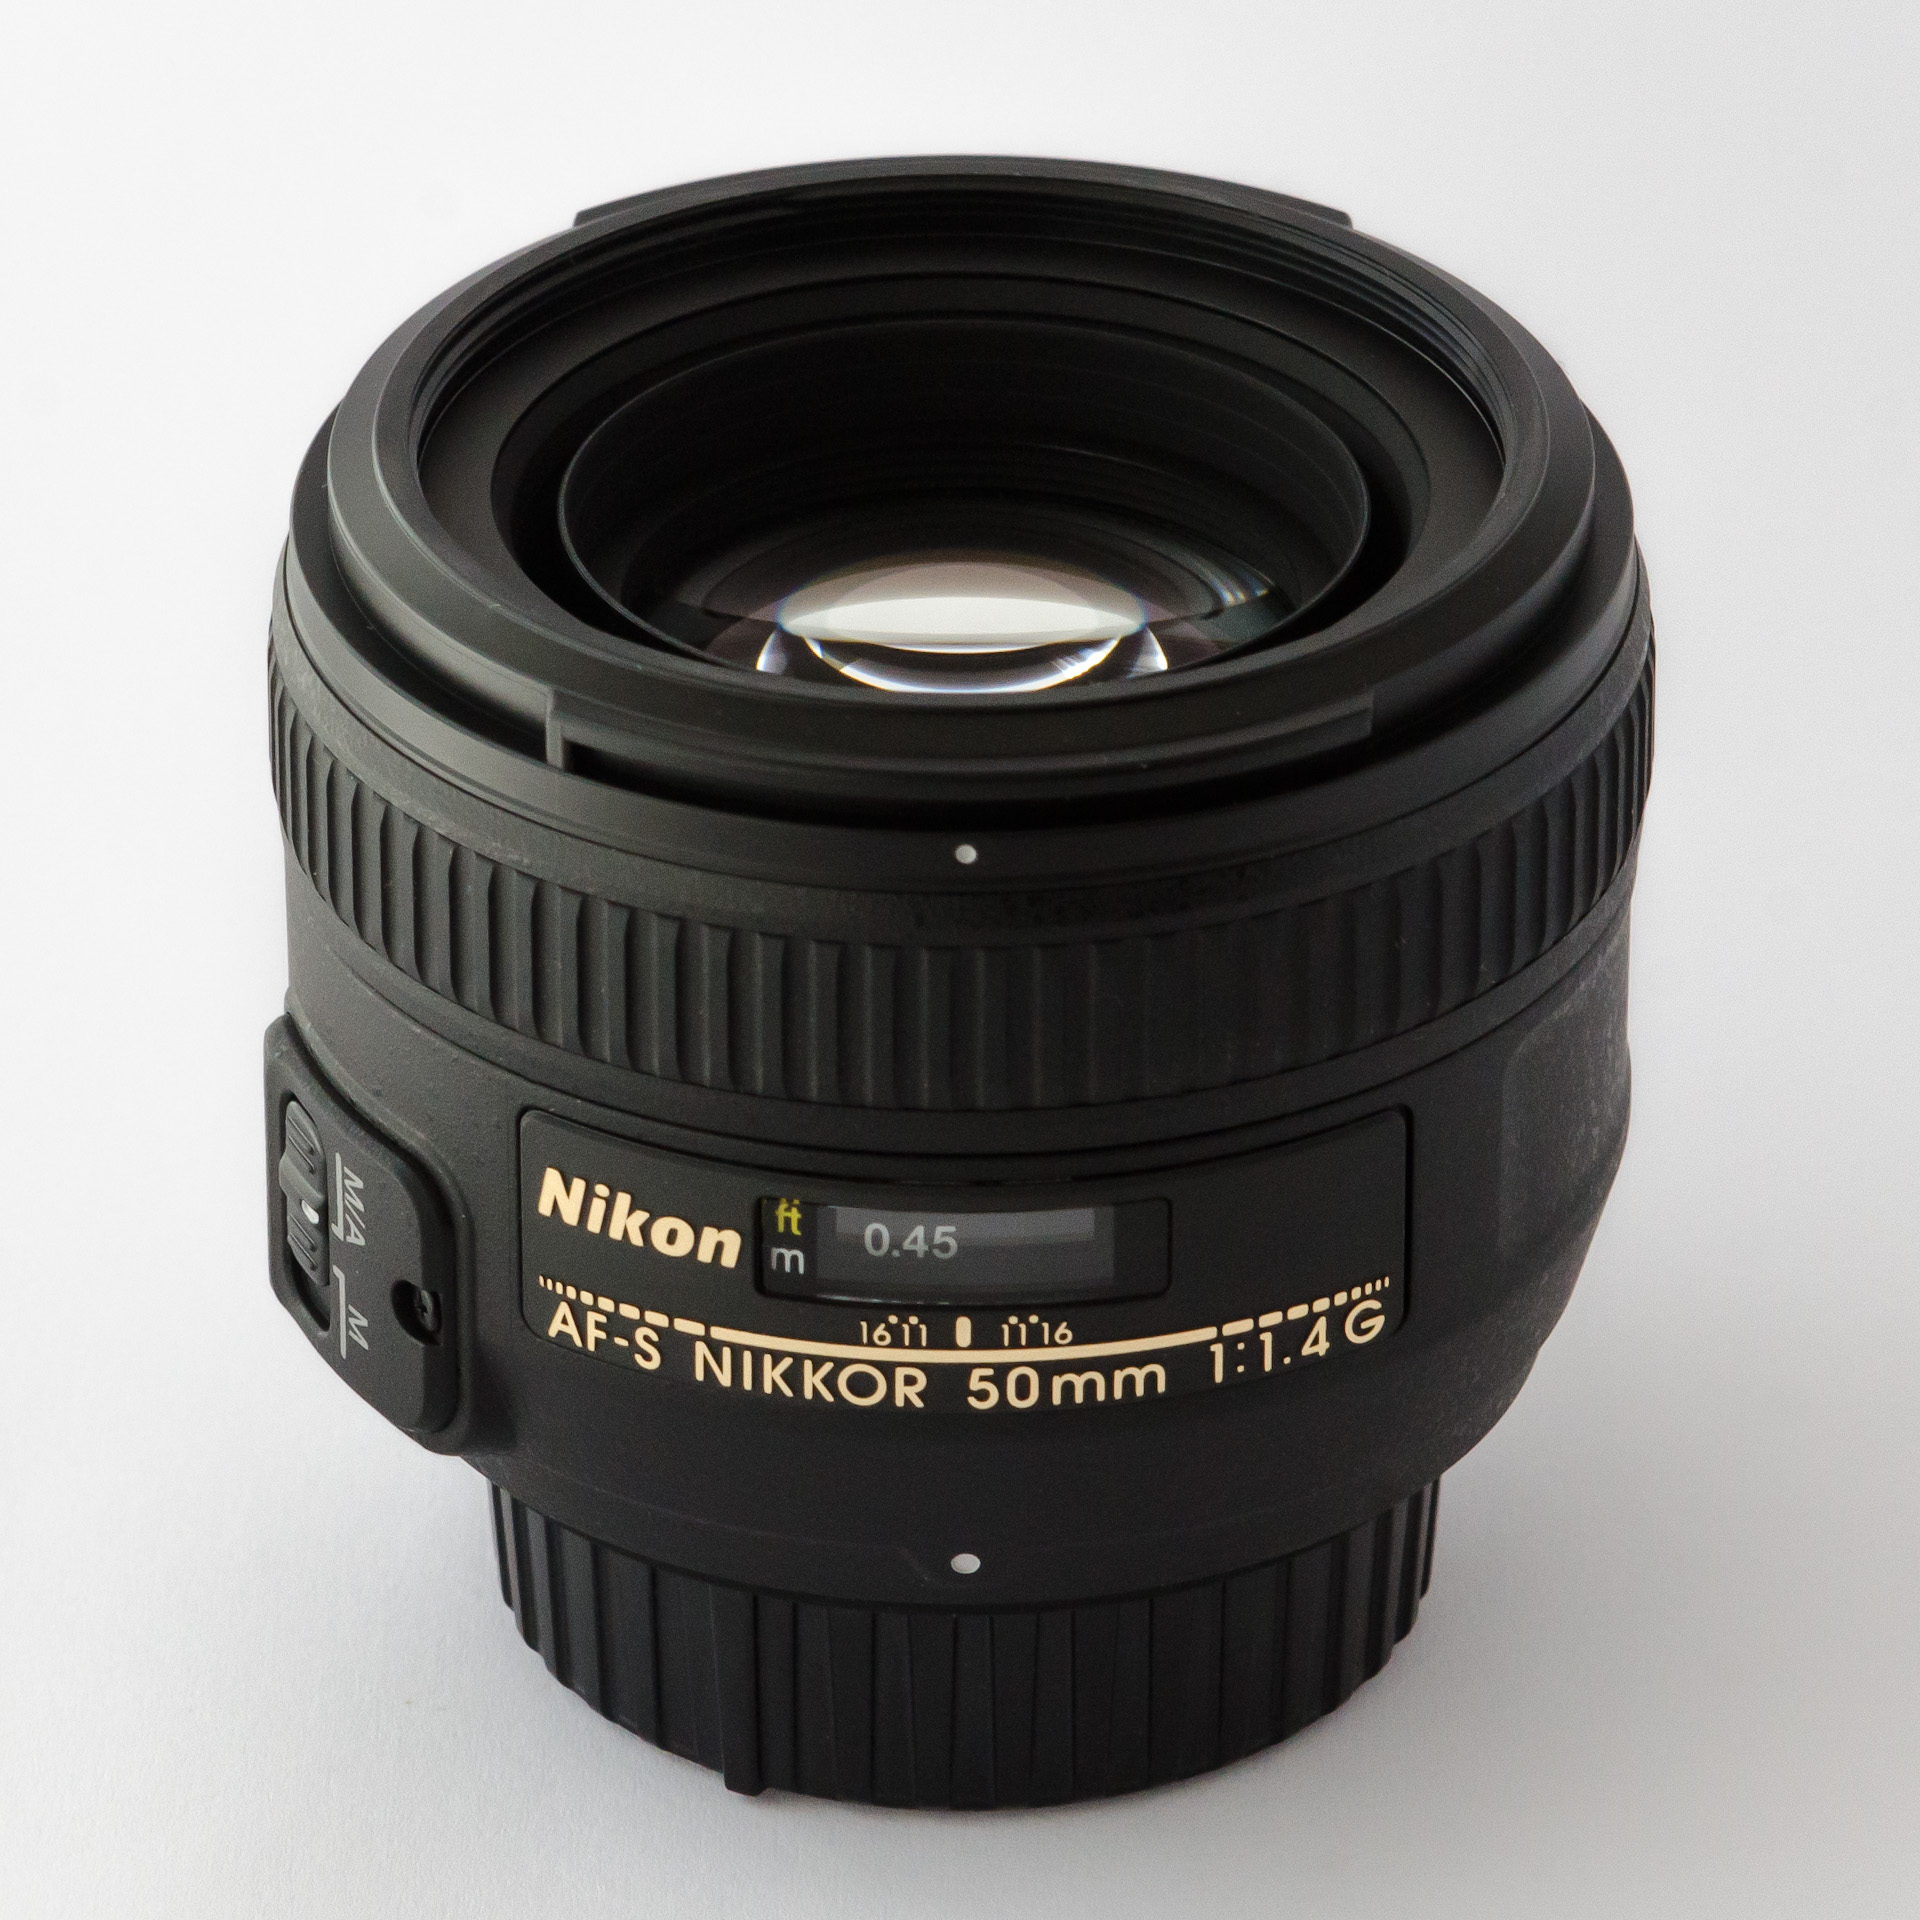 Nikon 50mm f/1.4g af-s Nikkor